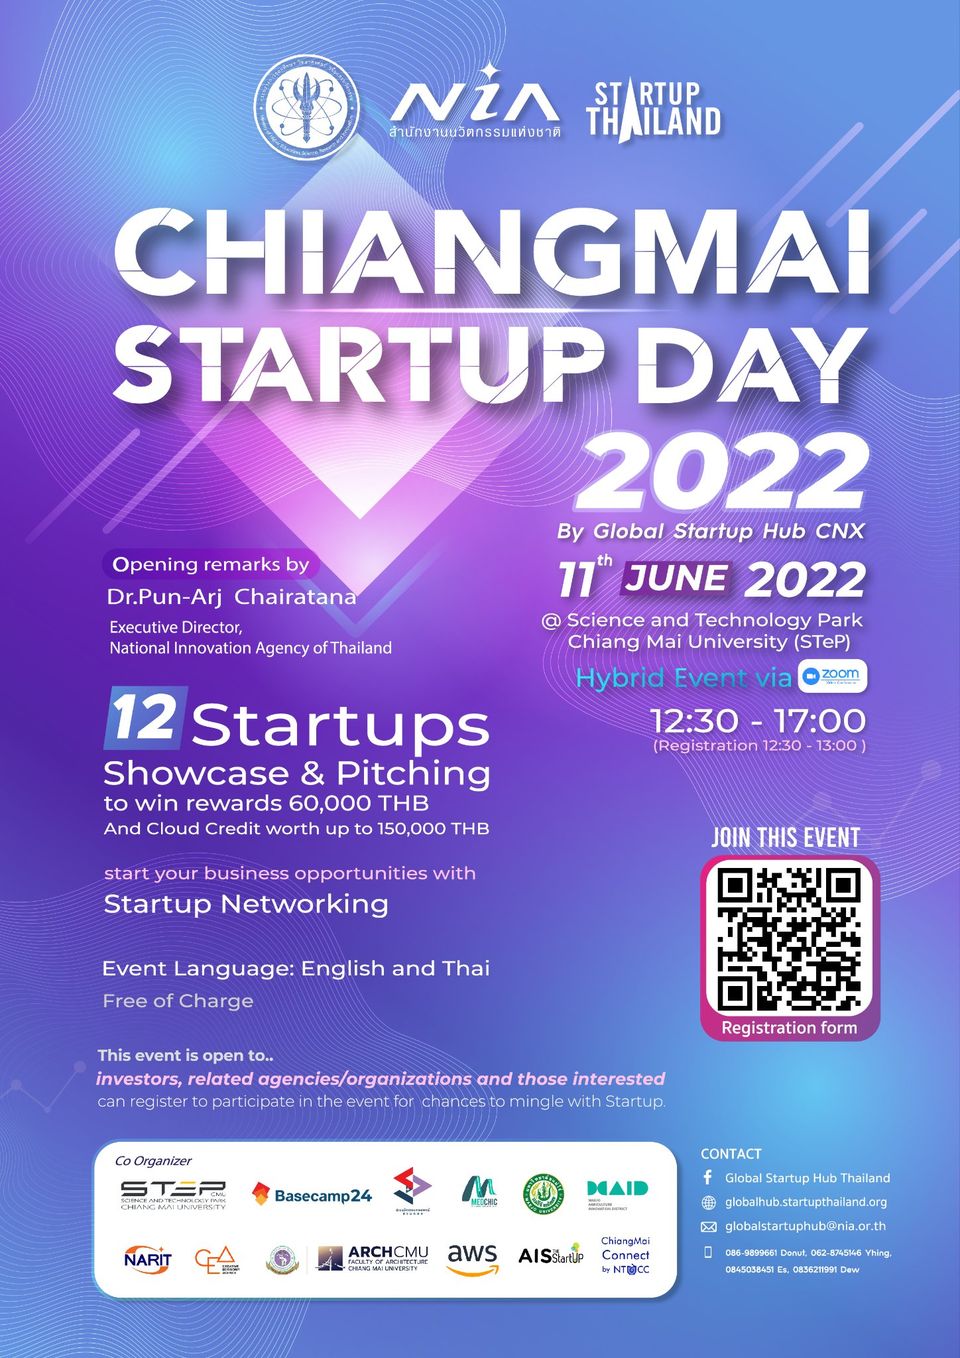 Chiangmai Startup Day